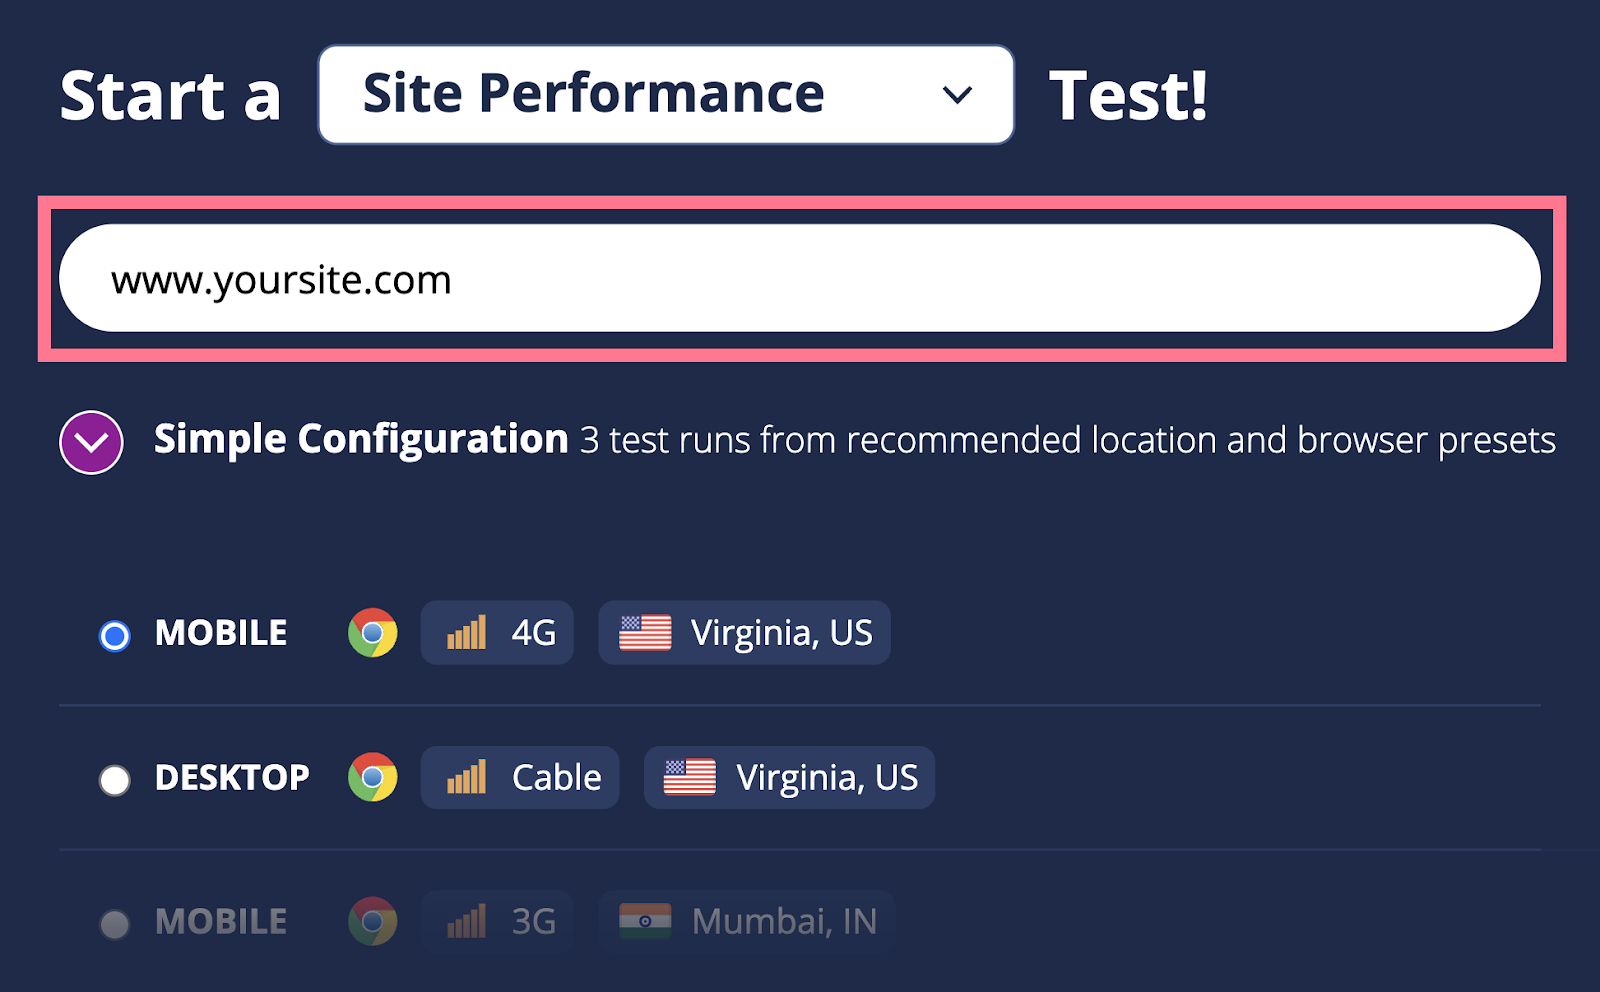 WebPage Test